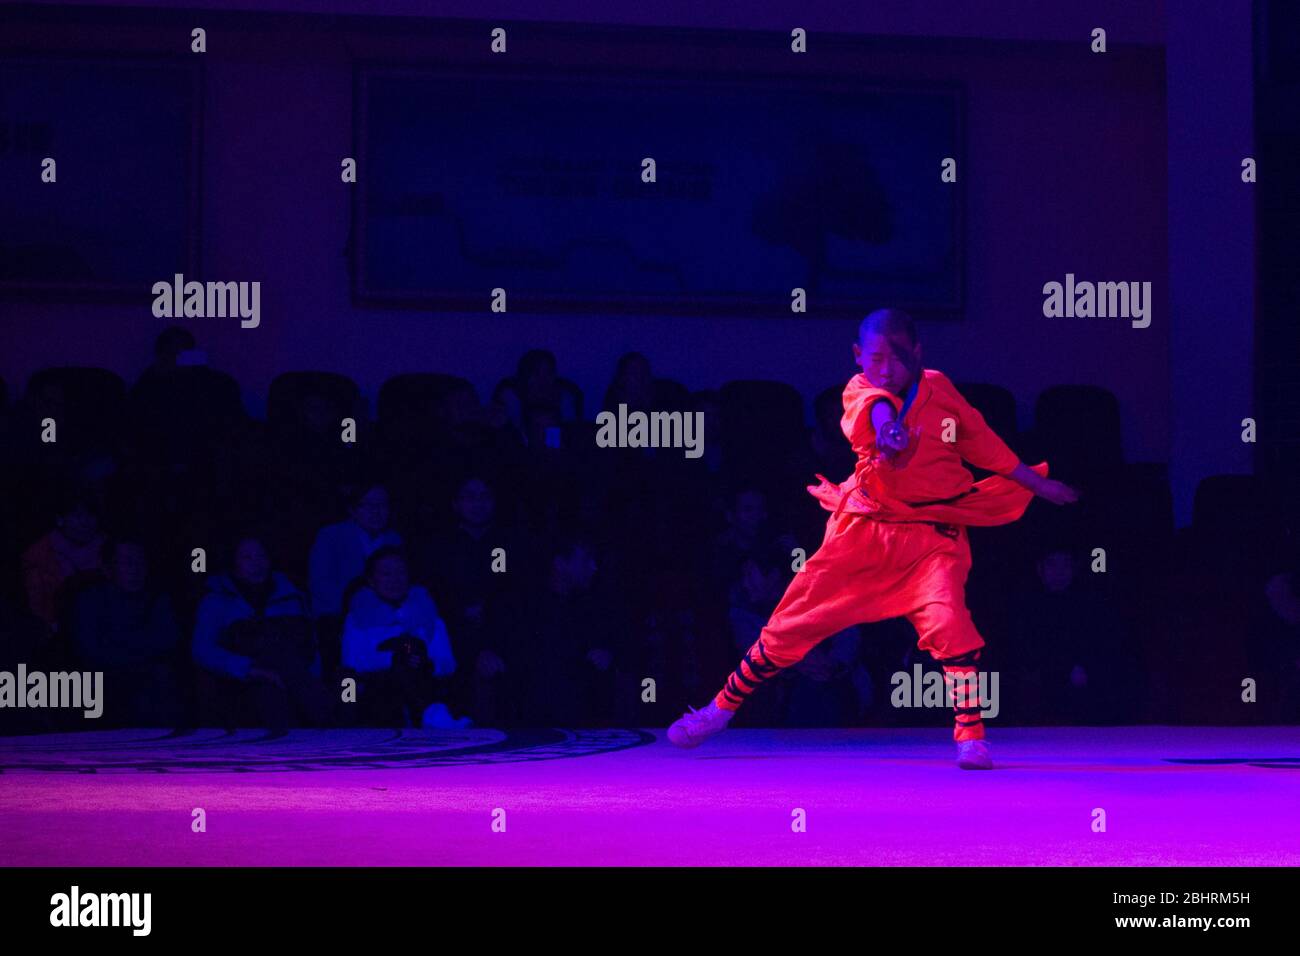 Shaolin, Luoyang, Henan Province / Chine - 4 janvier 2016 : démonstration de Shaolin Kung Fu par de jeunes apprentis au temple de Shaolin à Luoyang, Chine Banque D'Images